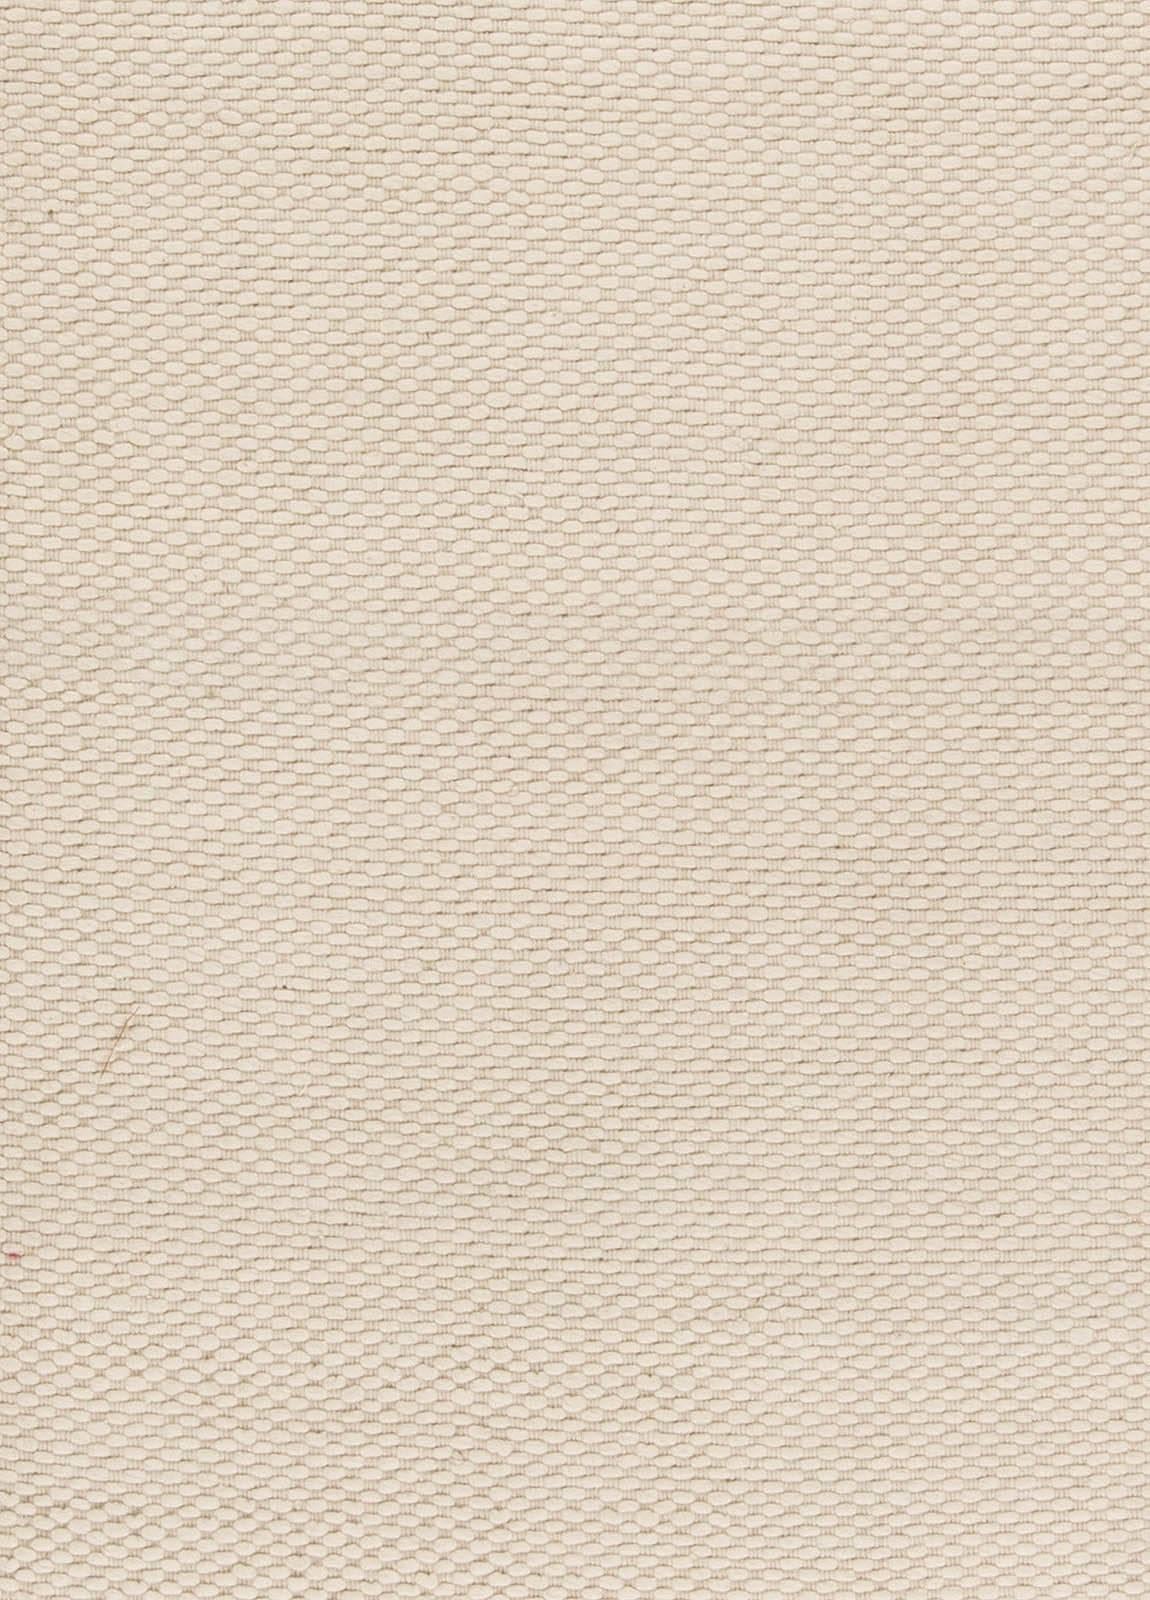 Modern solid beige flat-weave wool rug by Doris Leslie Blau
Size: 11'10